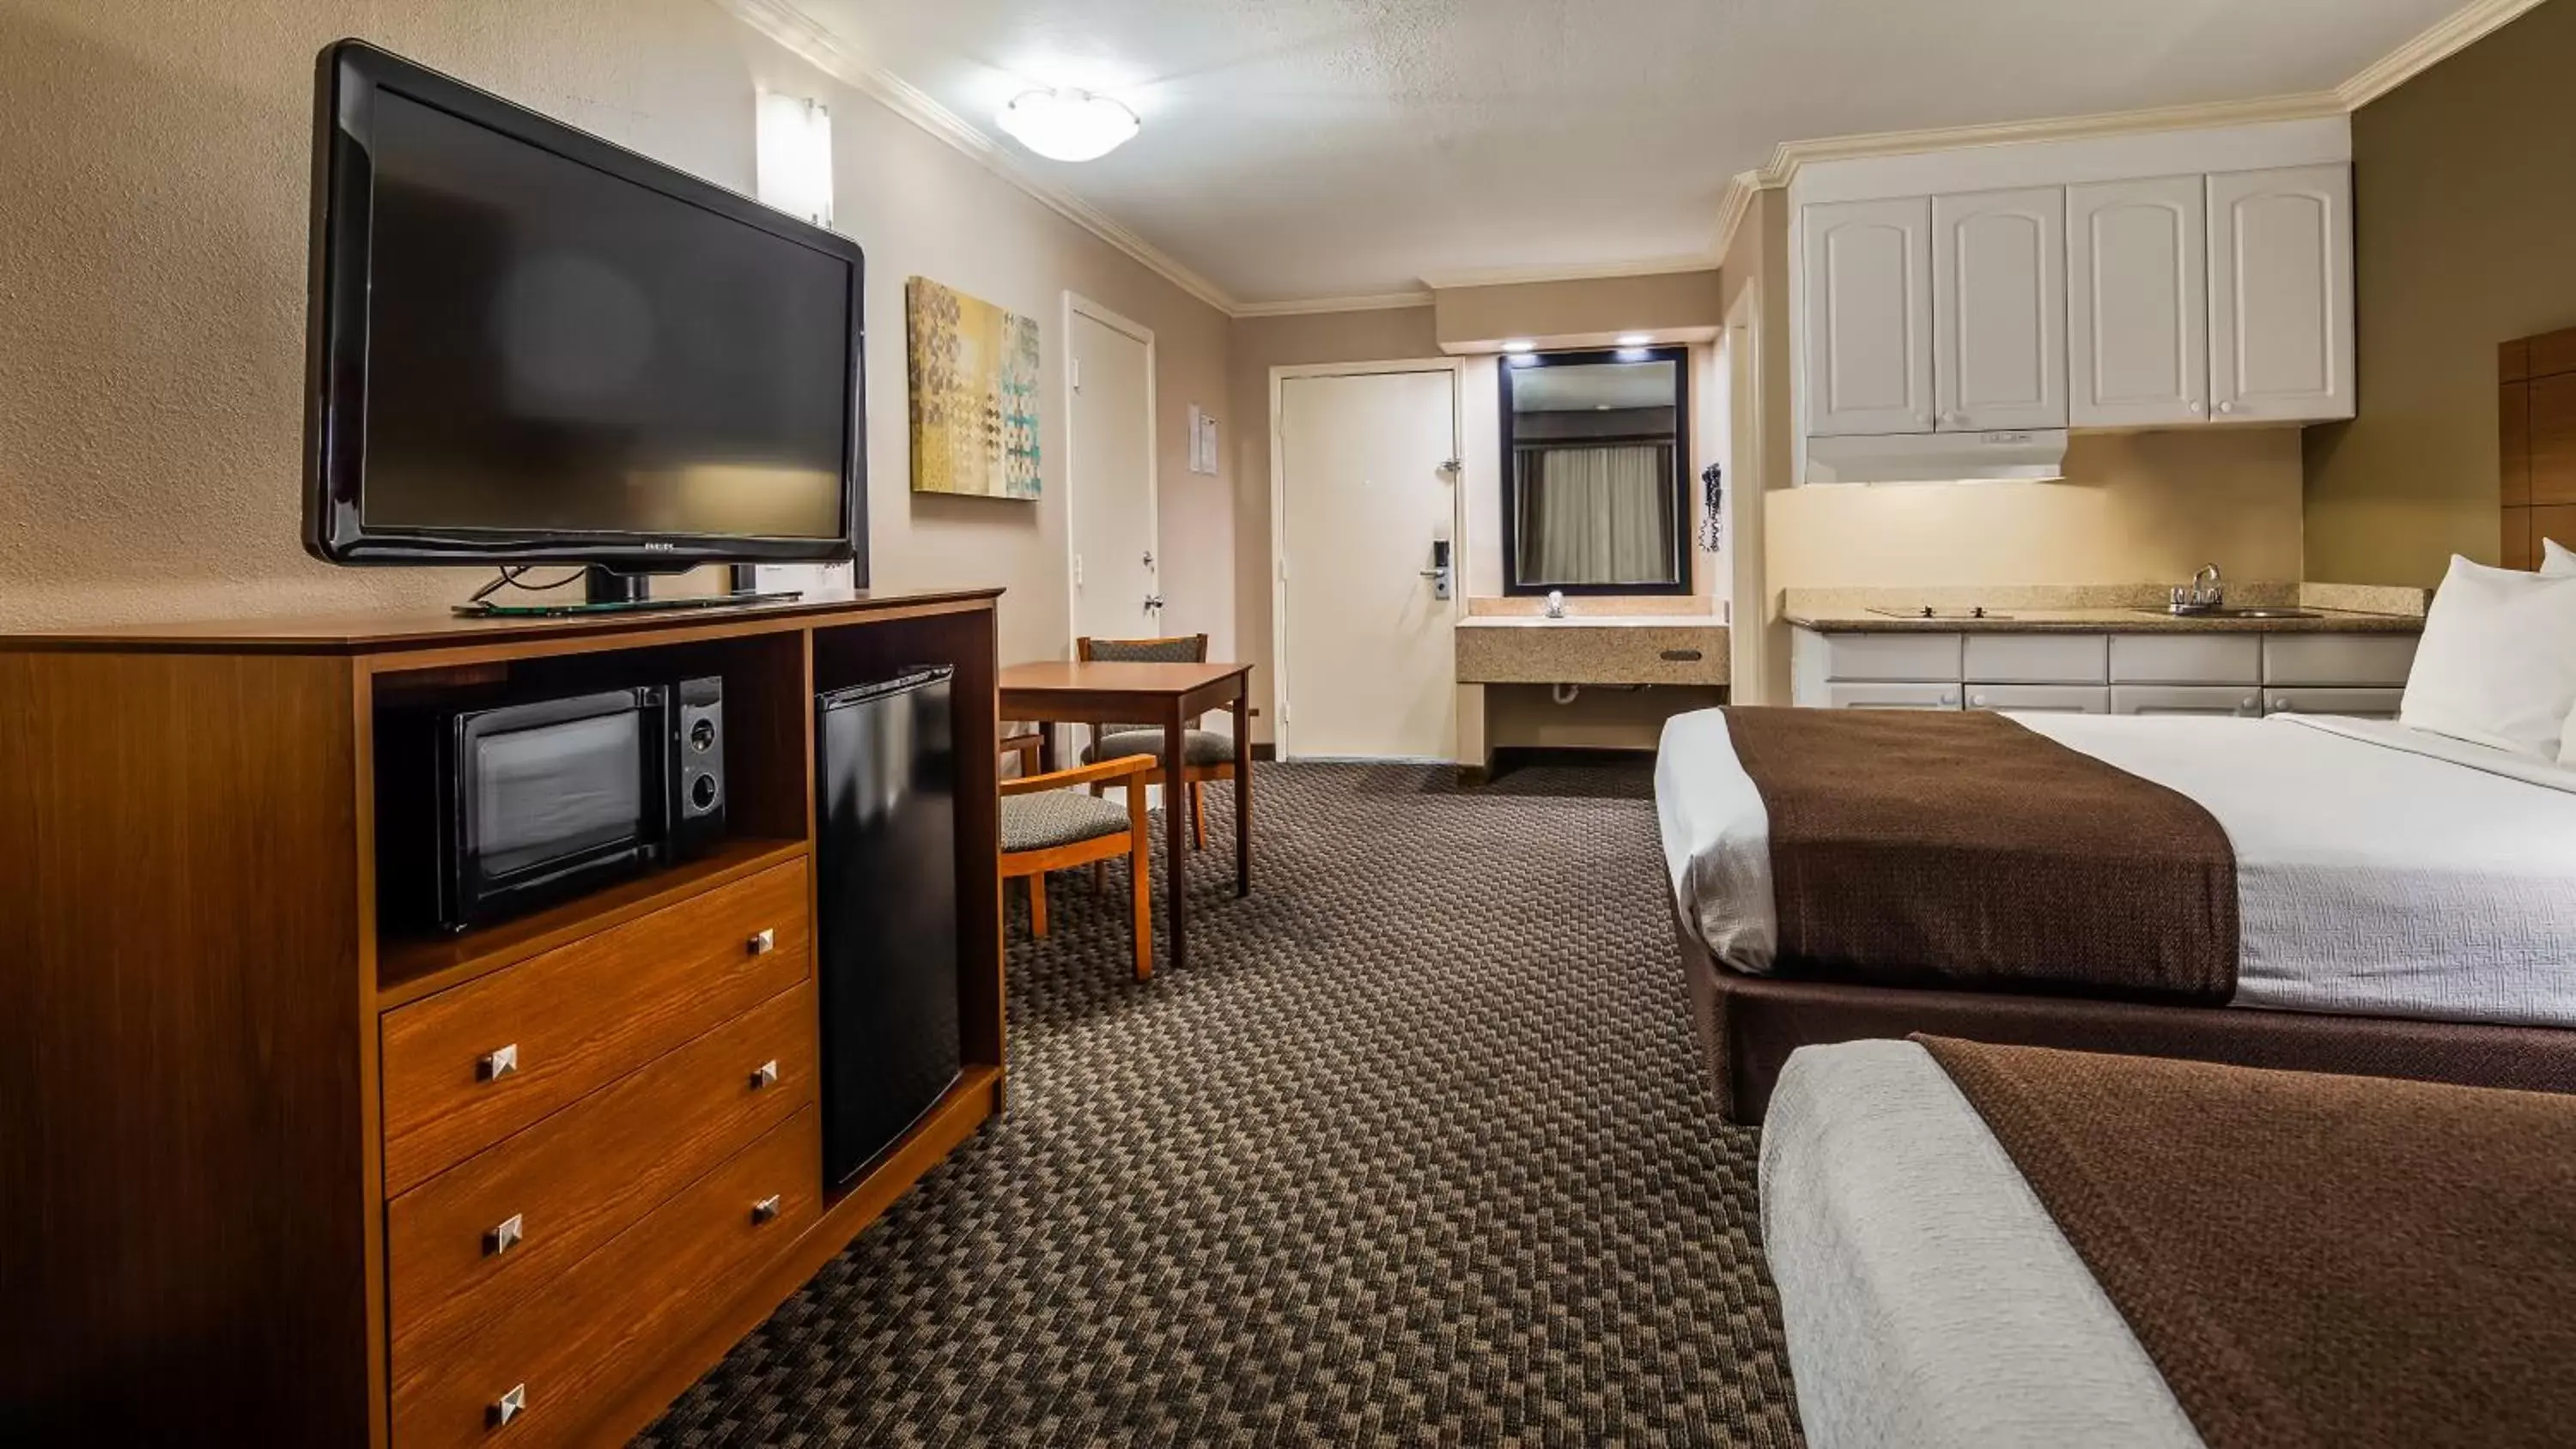 Bedroom, TV/Entertainment Center in Best Western Oxnard Inn